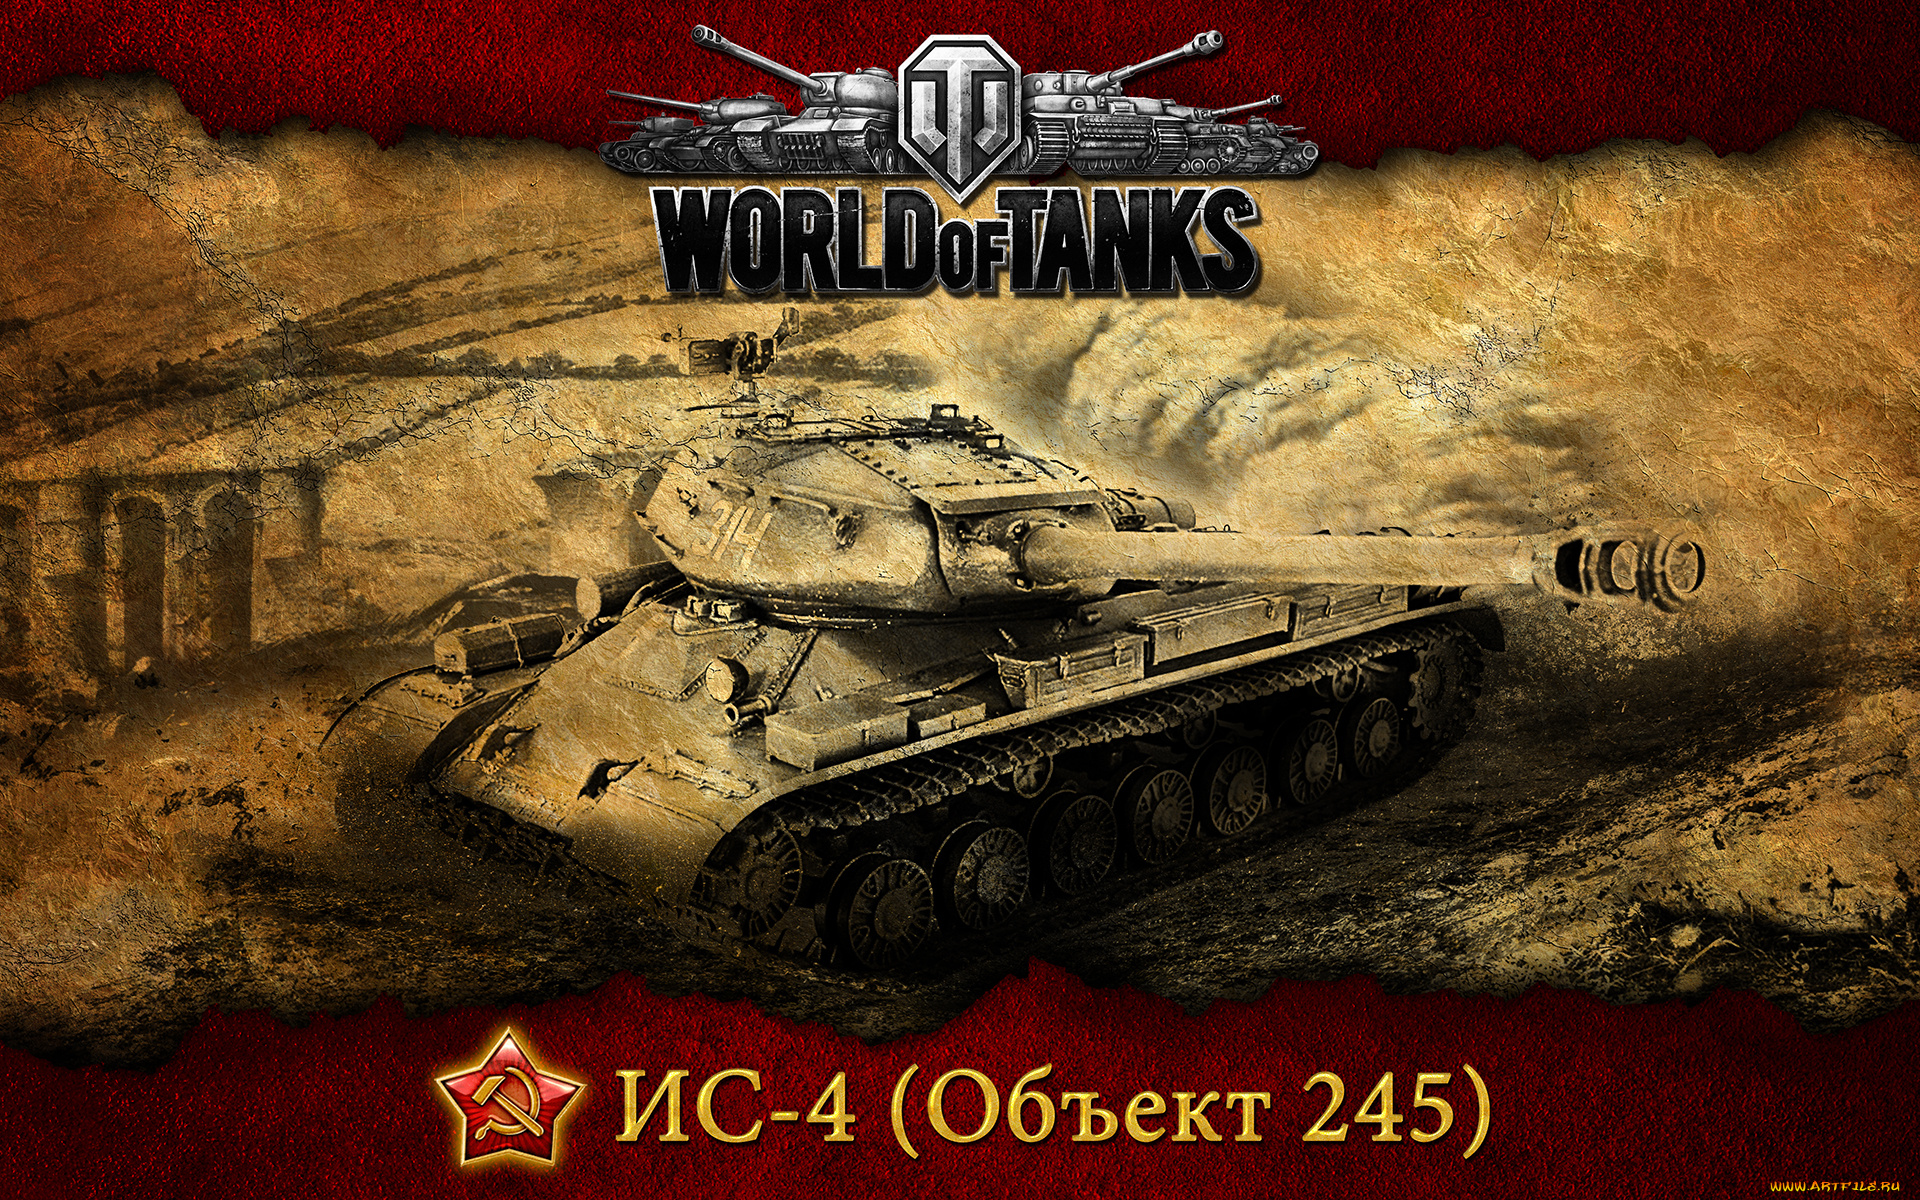 ис, видео, игры, мир, танков, world, of, tanks, ис-4, советский, танк